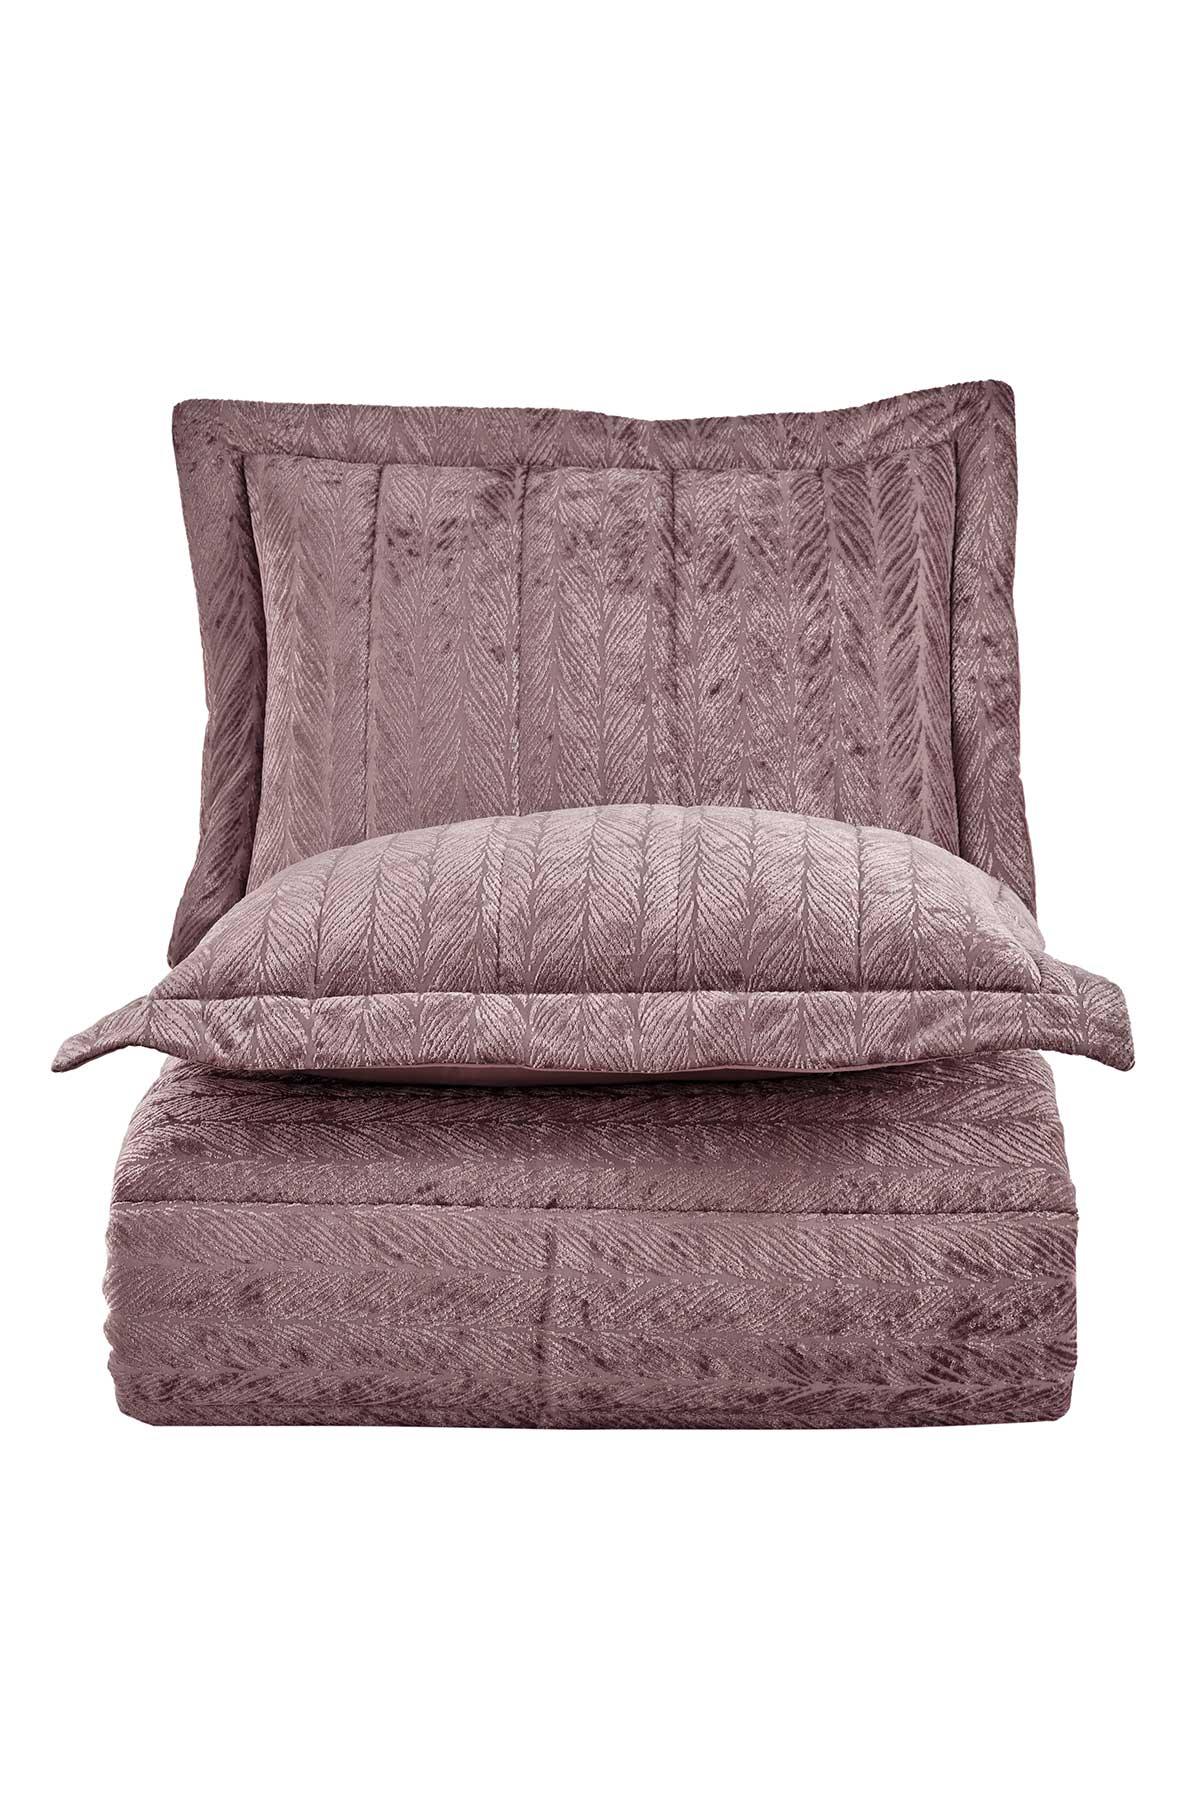 Velvet Kadife Comfort Set Modern Uyku Seti Tek Kişilik Gülkurusu 2 Parça - Elart Home